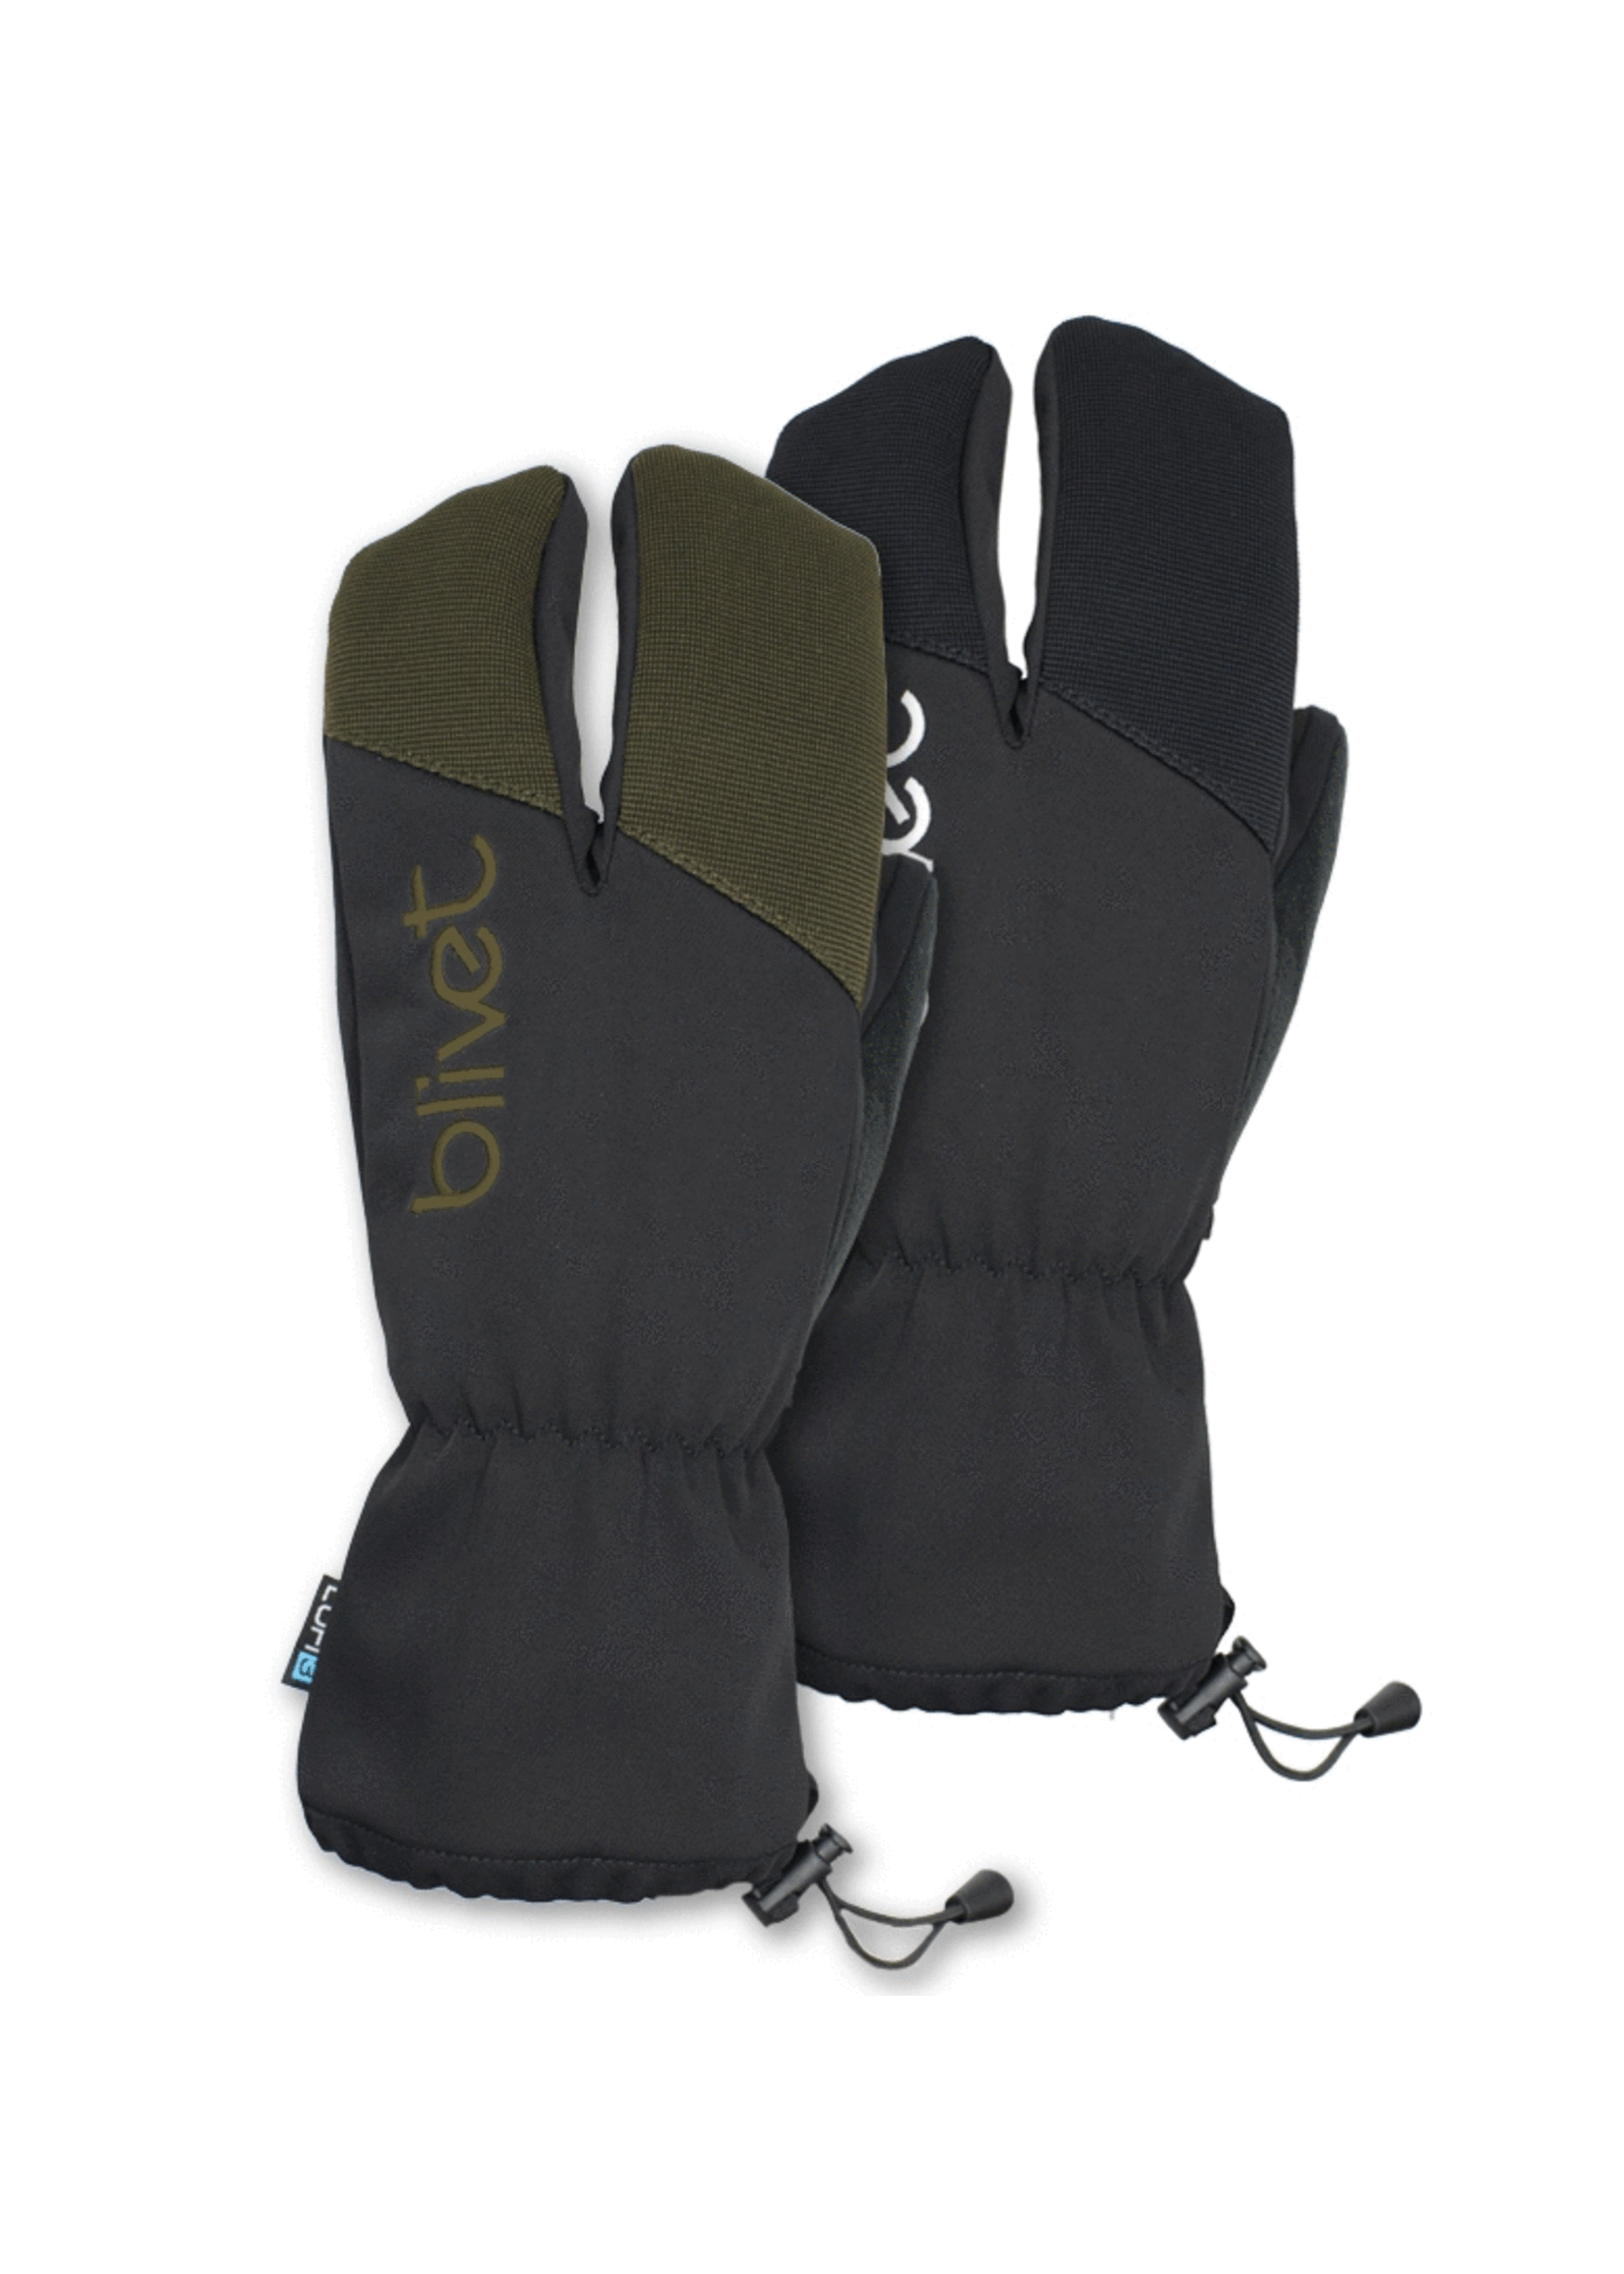 Blivet Blivet- Lofi 3 Glove, Olive